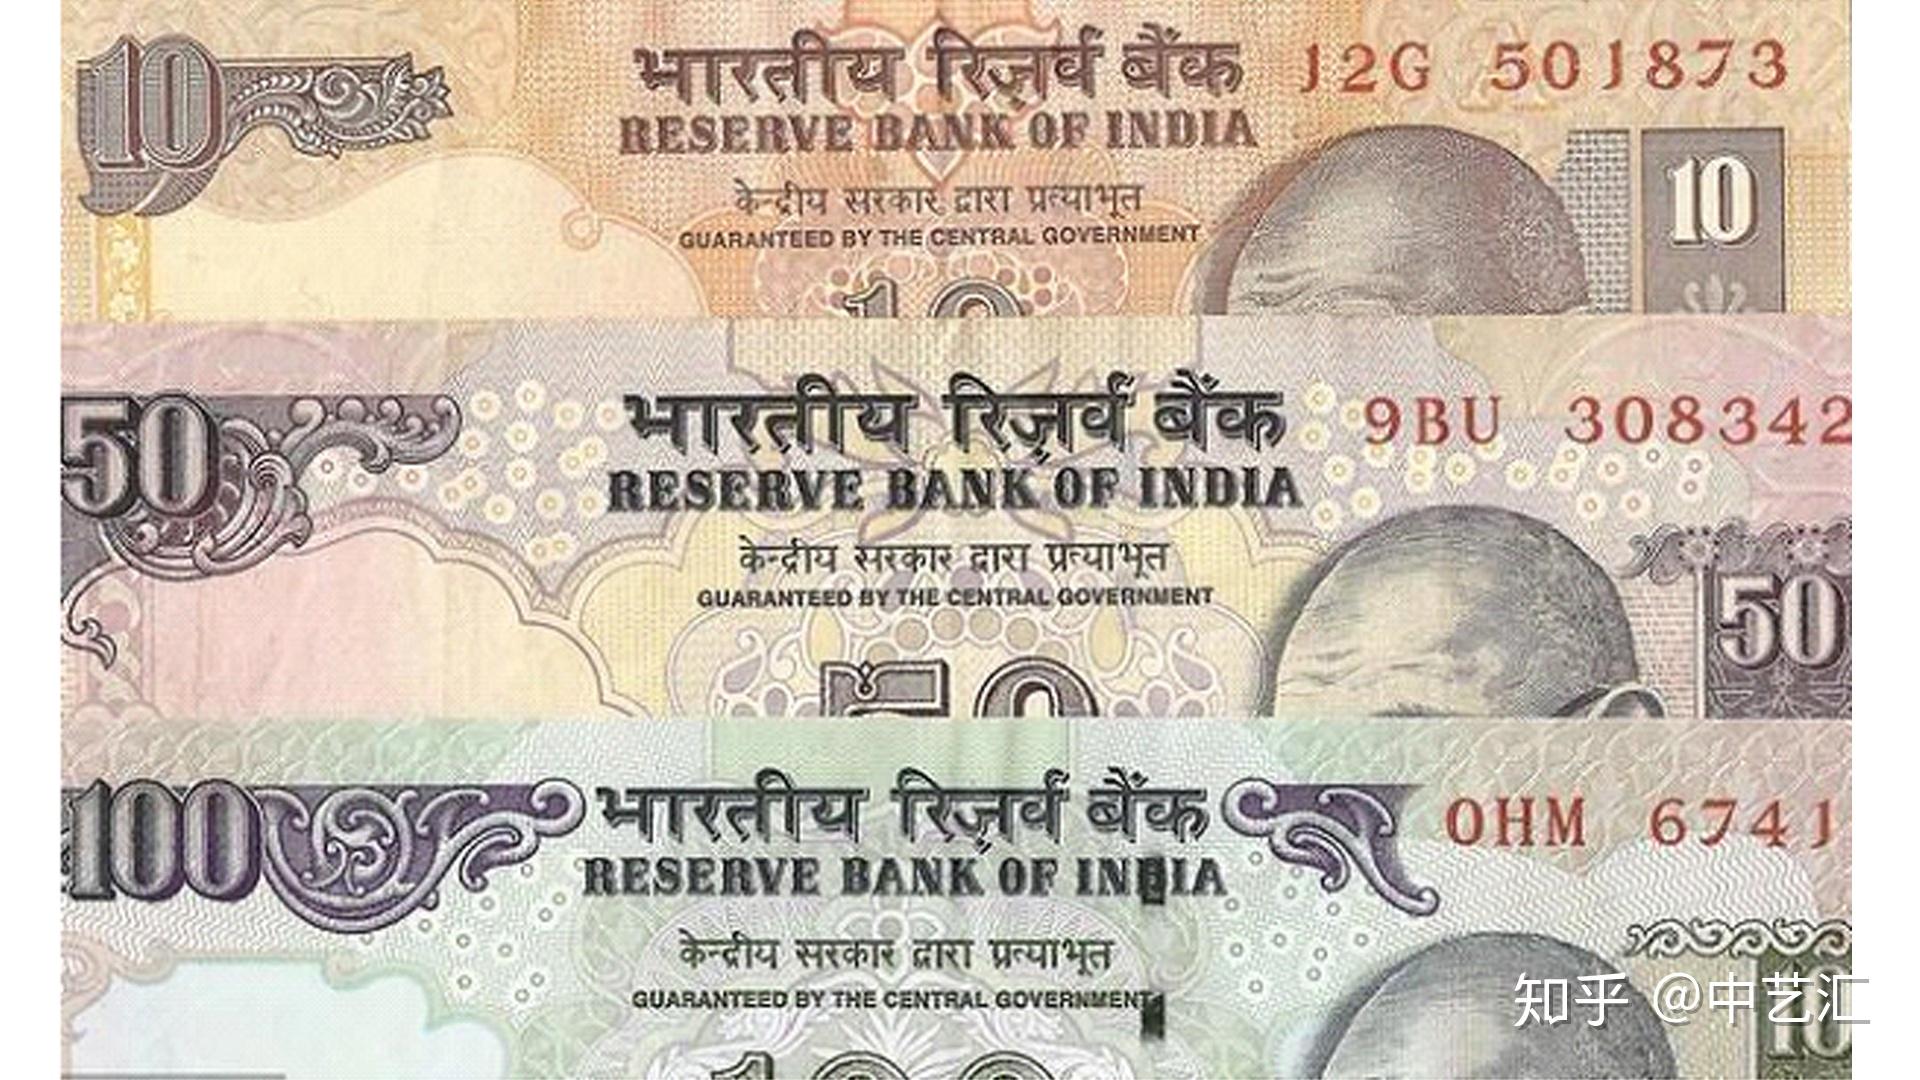 1906年英属印度1卢比银币 - 机制币和纸币拍卖 - 古泉社区